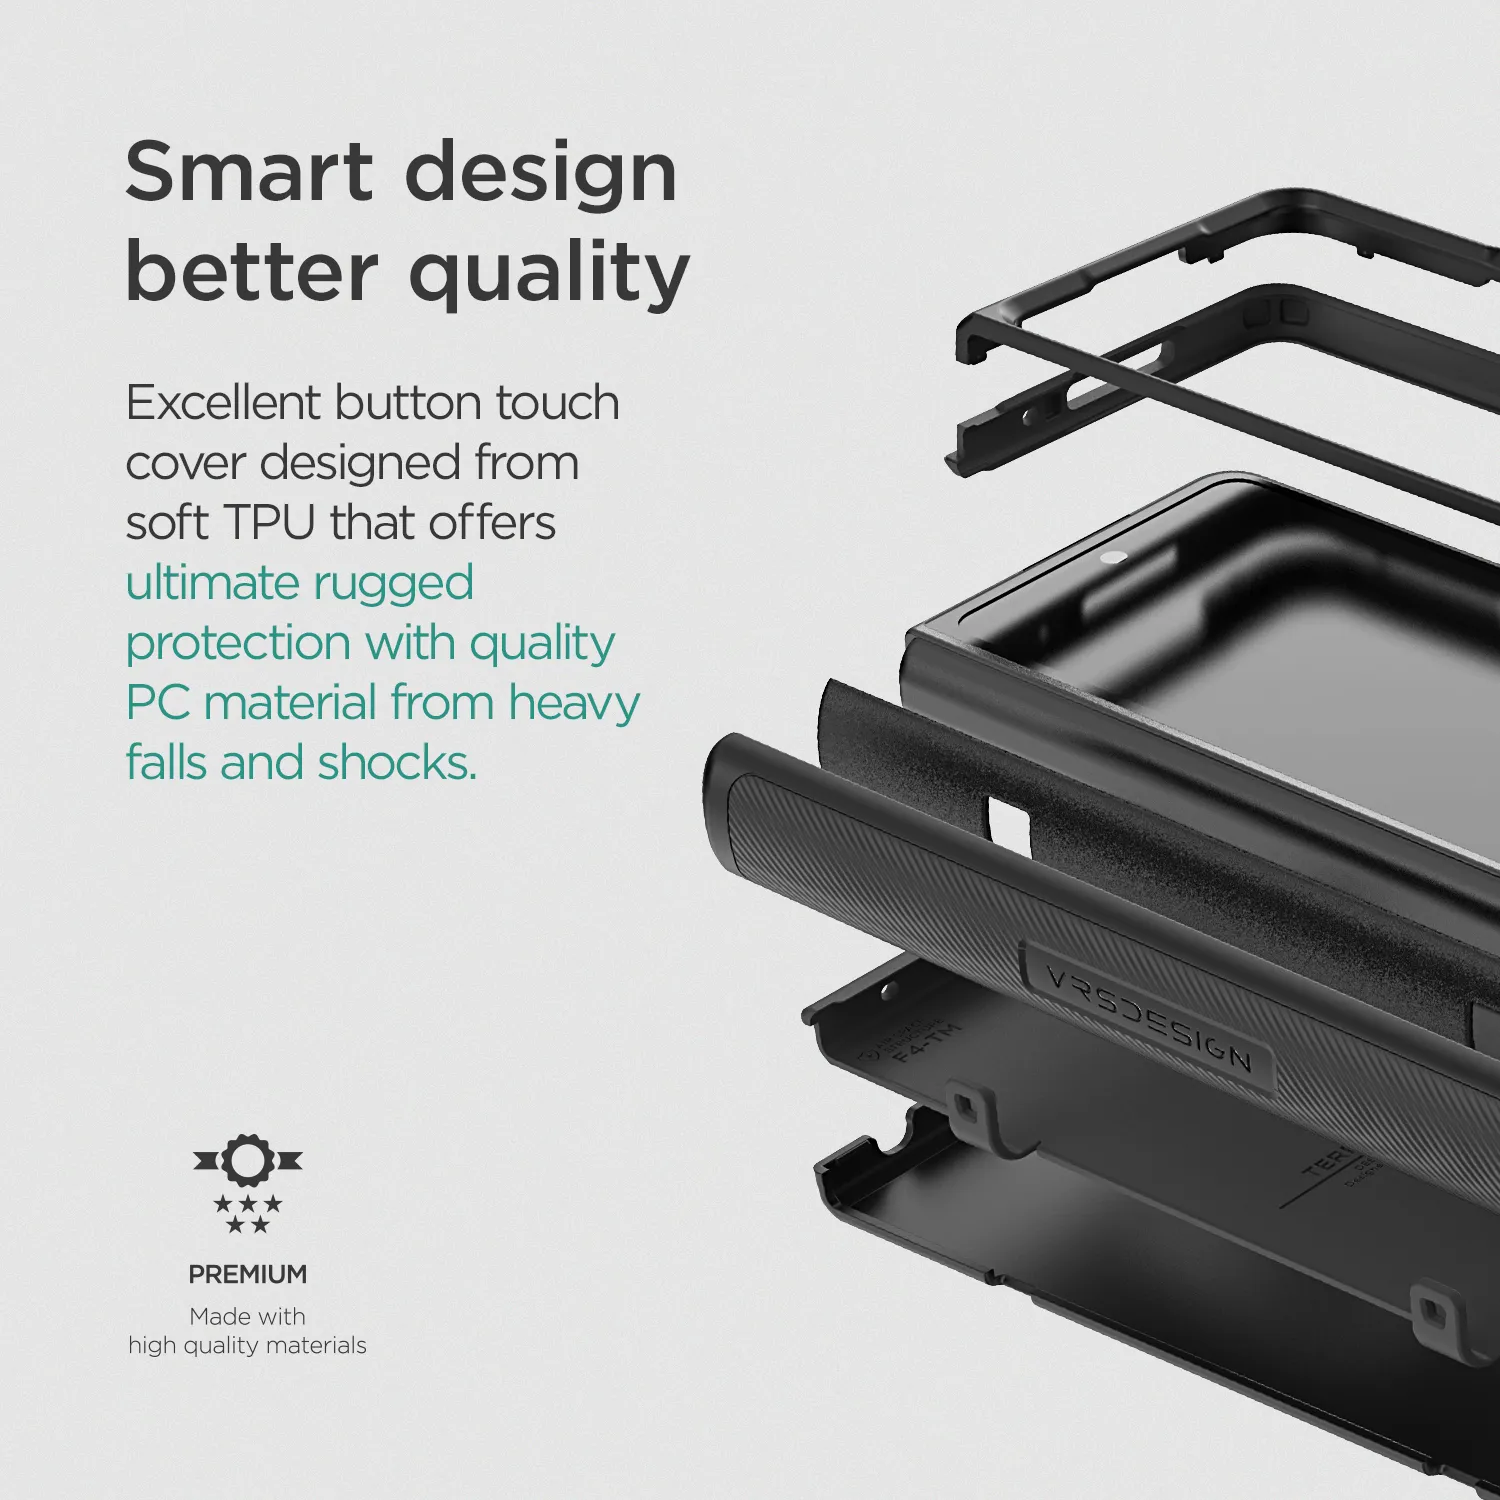 เคส VRS รุ่น Terra Guard Modern - Galaxy Z Fold 4 - สี Matte Black